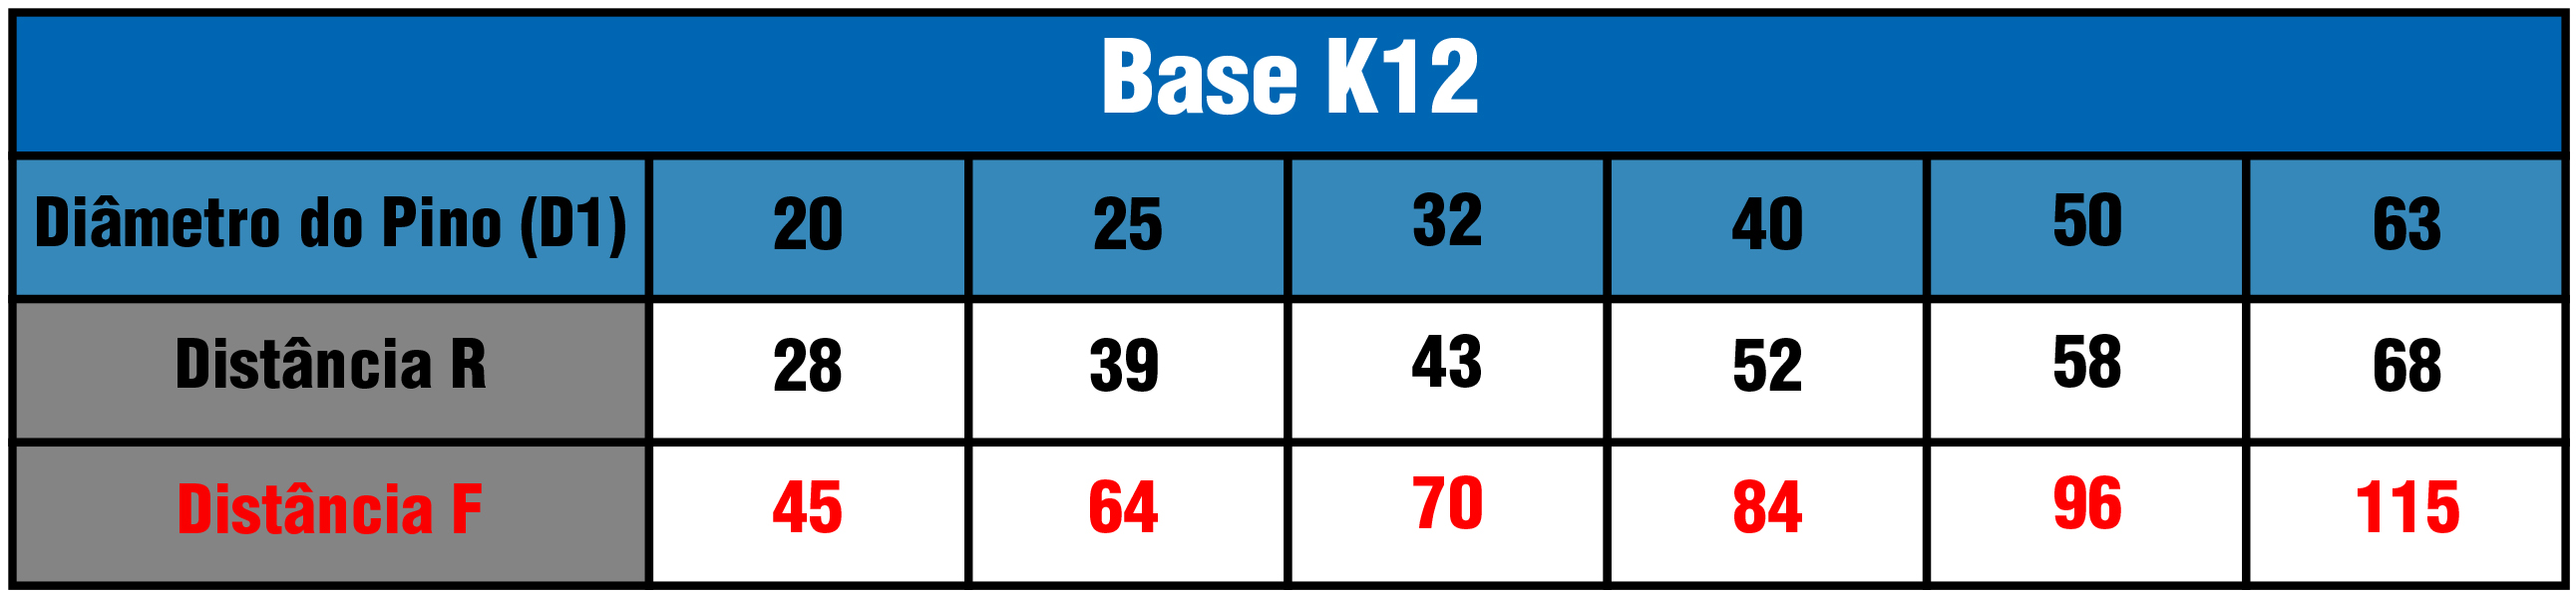 Tabela Base K12